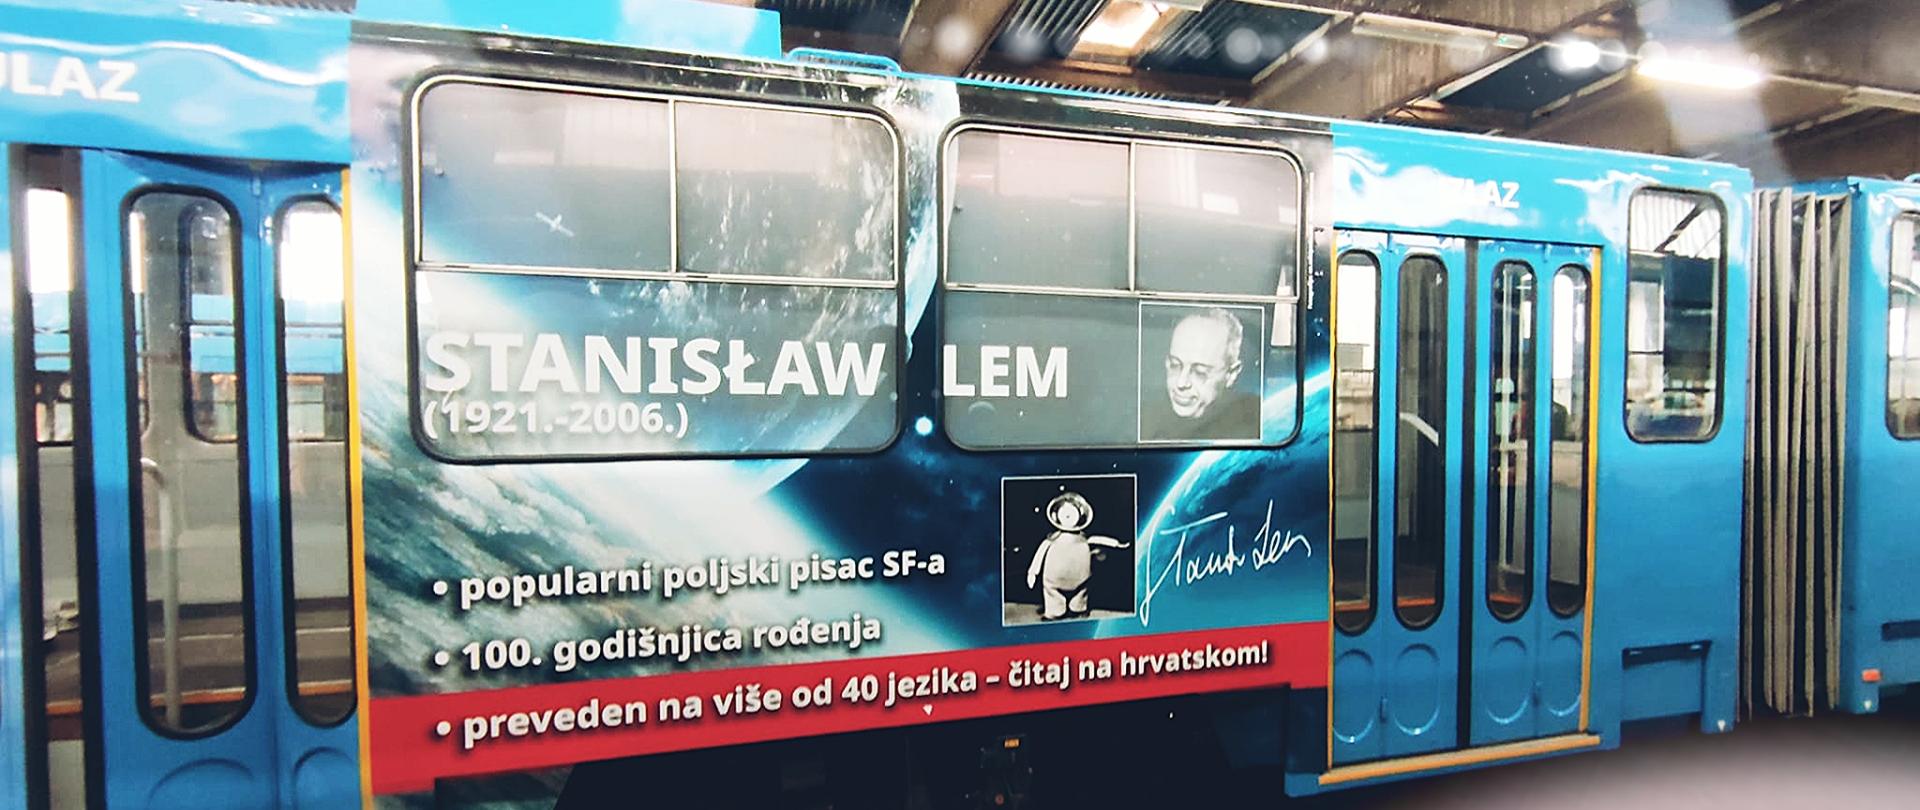 Zagrzebski tramwaj promujący twórczość Stanisława Lema